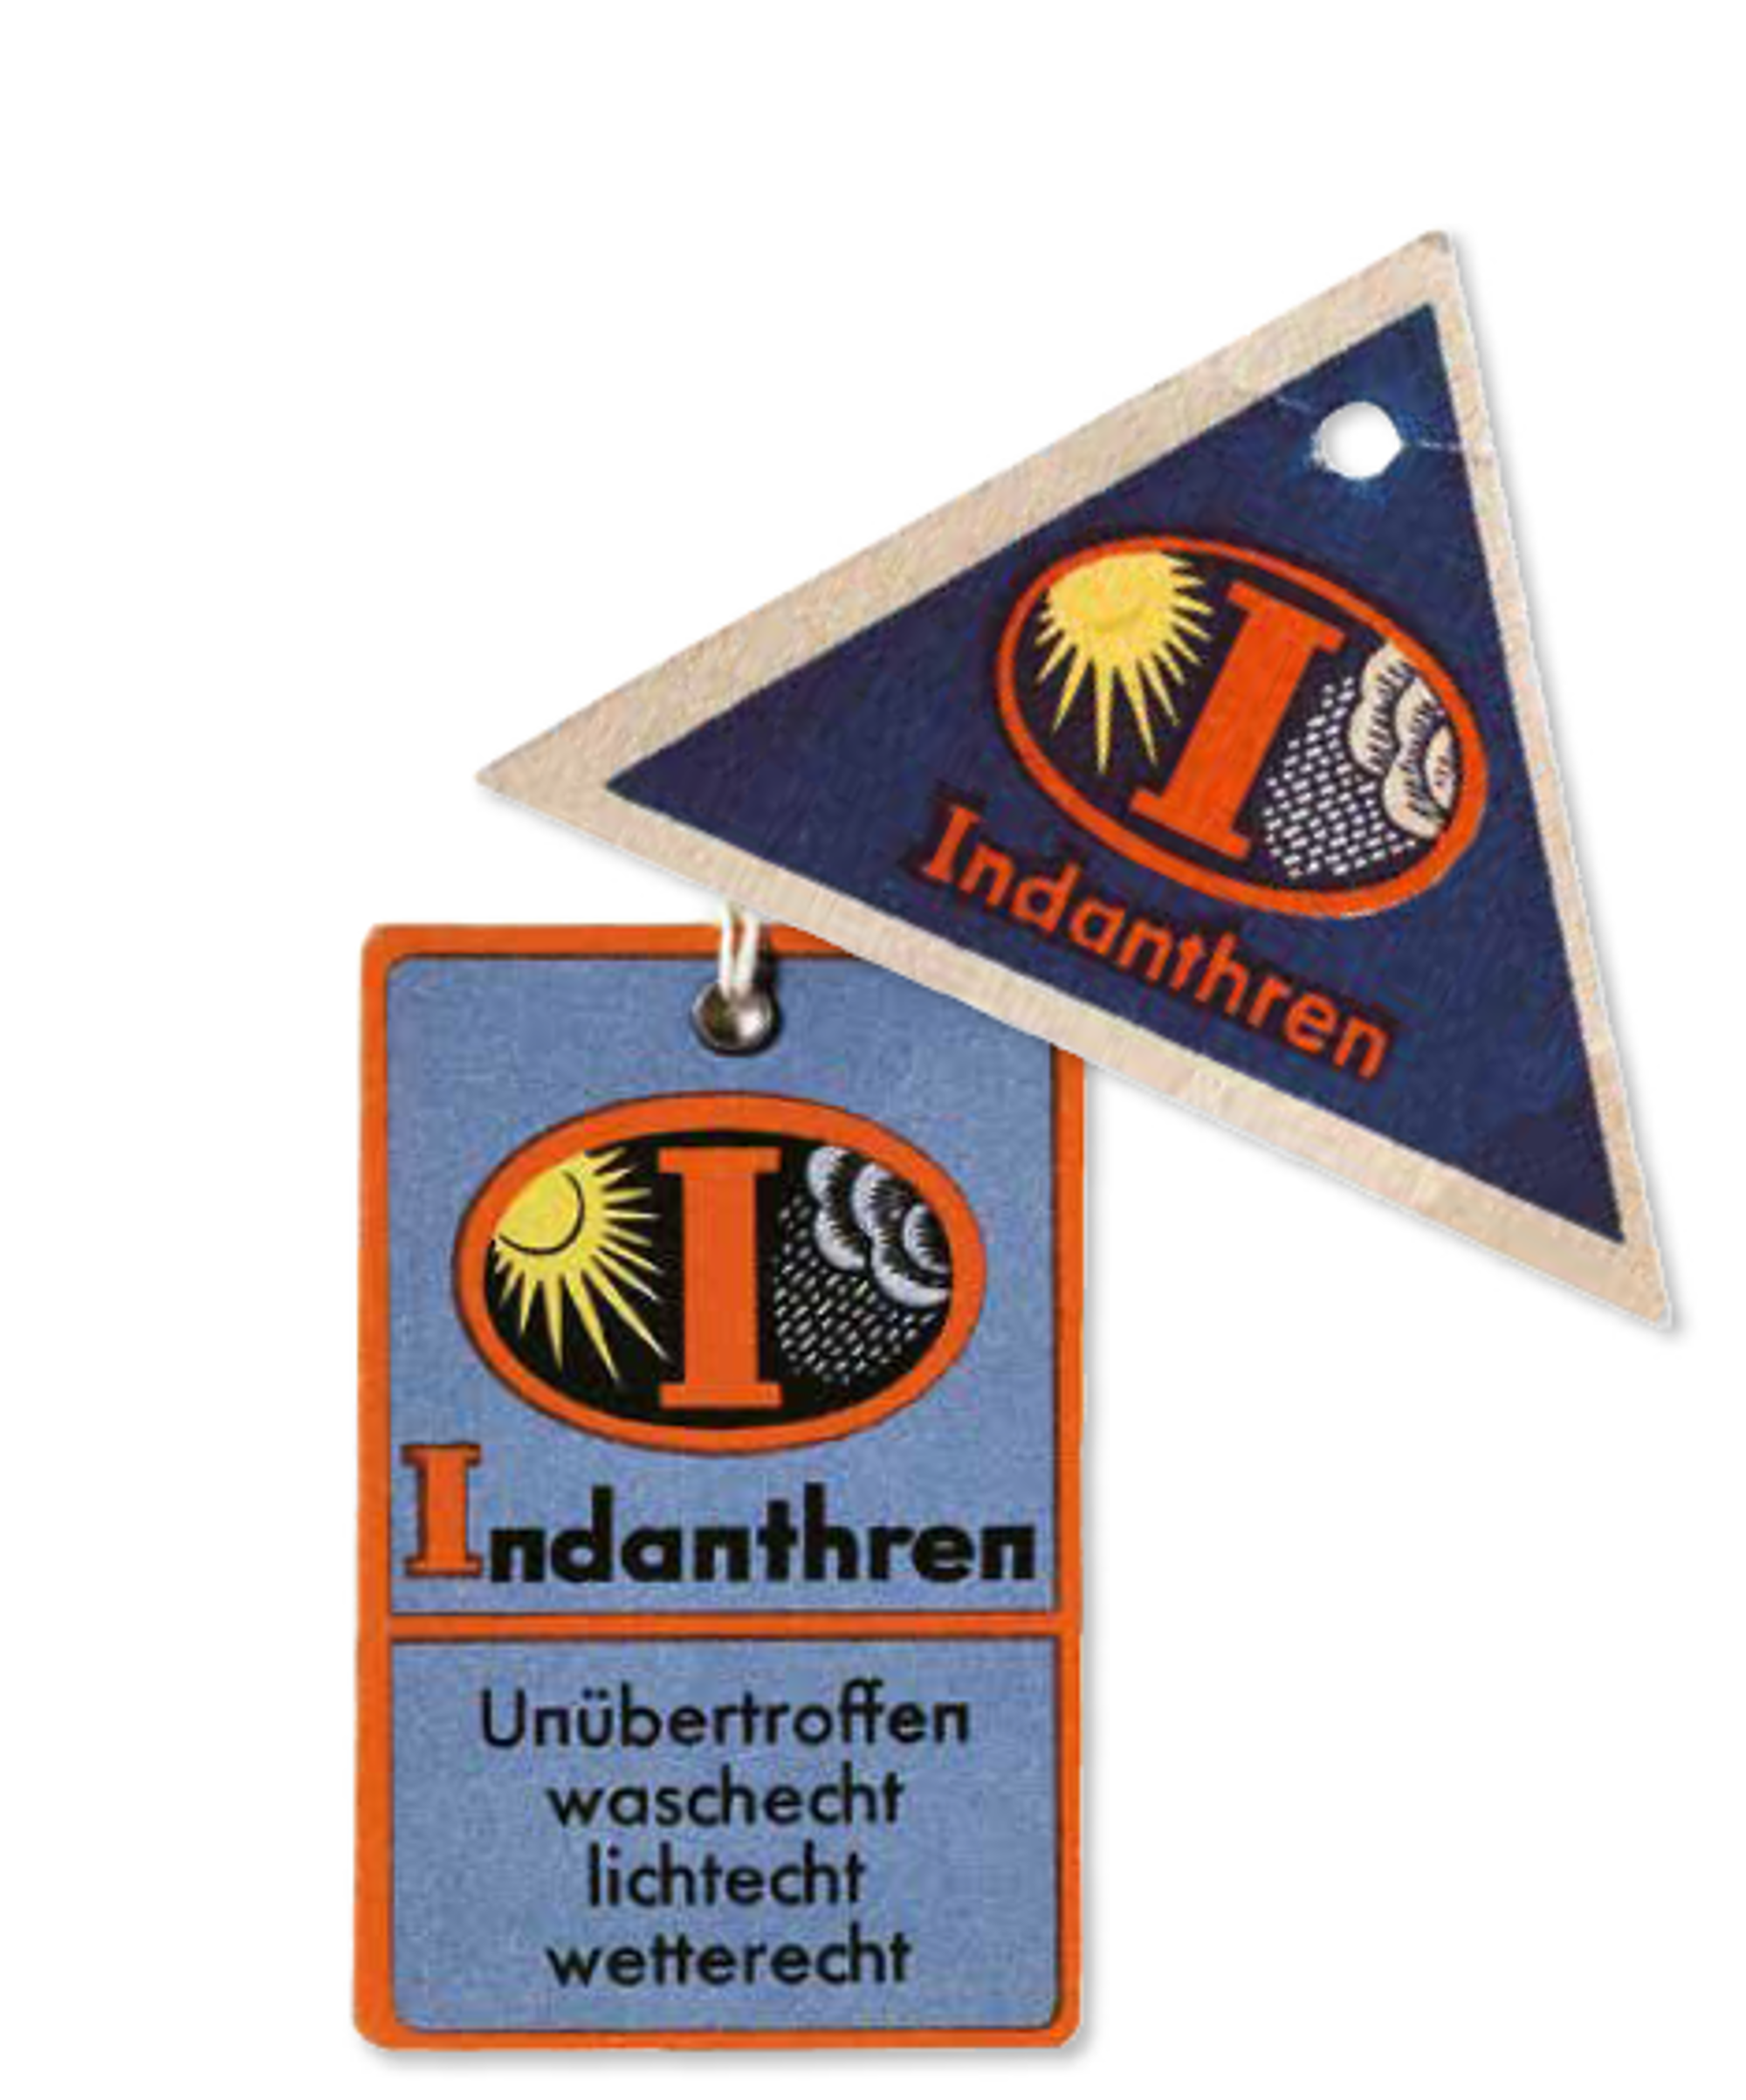 ukázka dvou visaček, cedulek s nápisem Indianthren, trojúhelníková a obdélníková